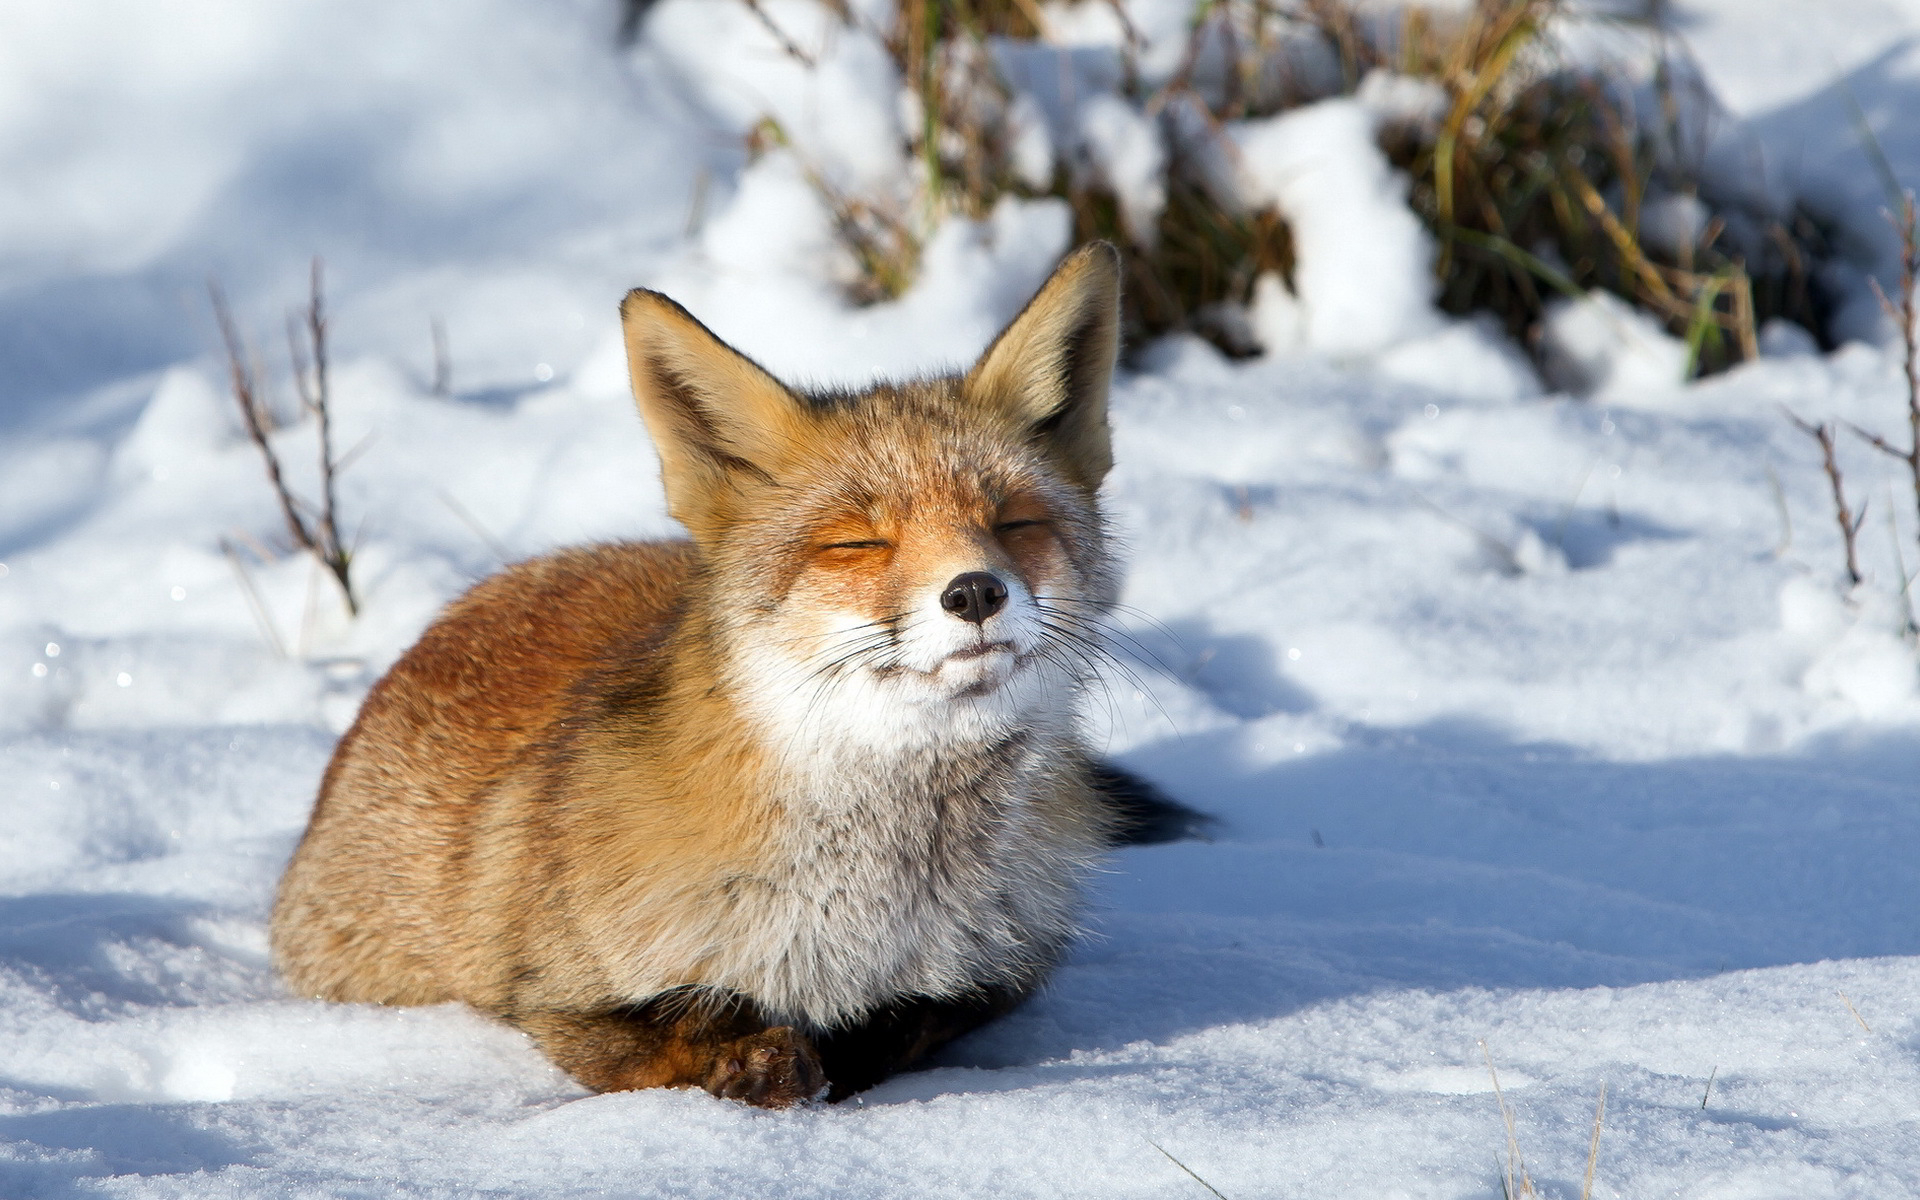 Fox sunbath